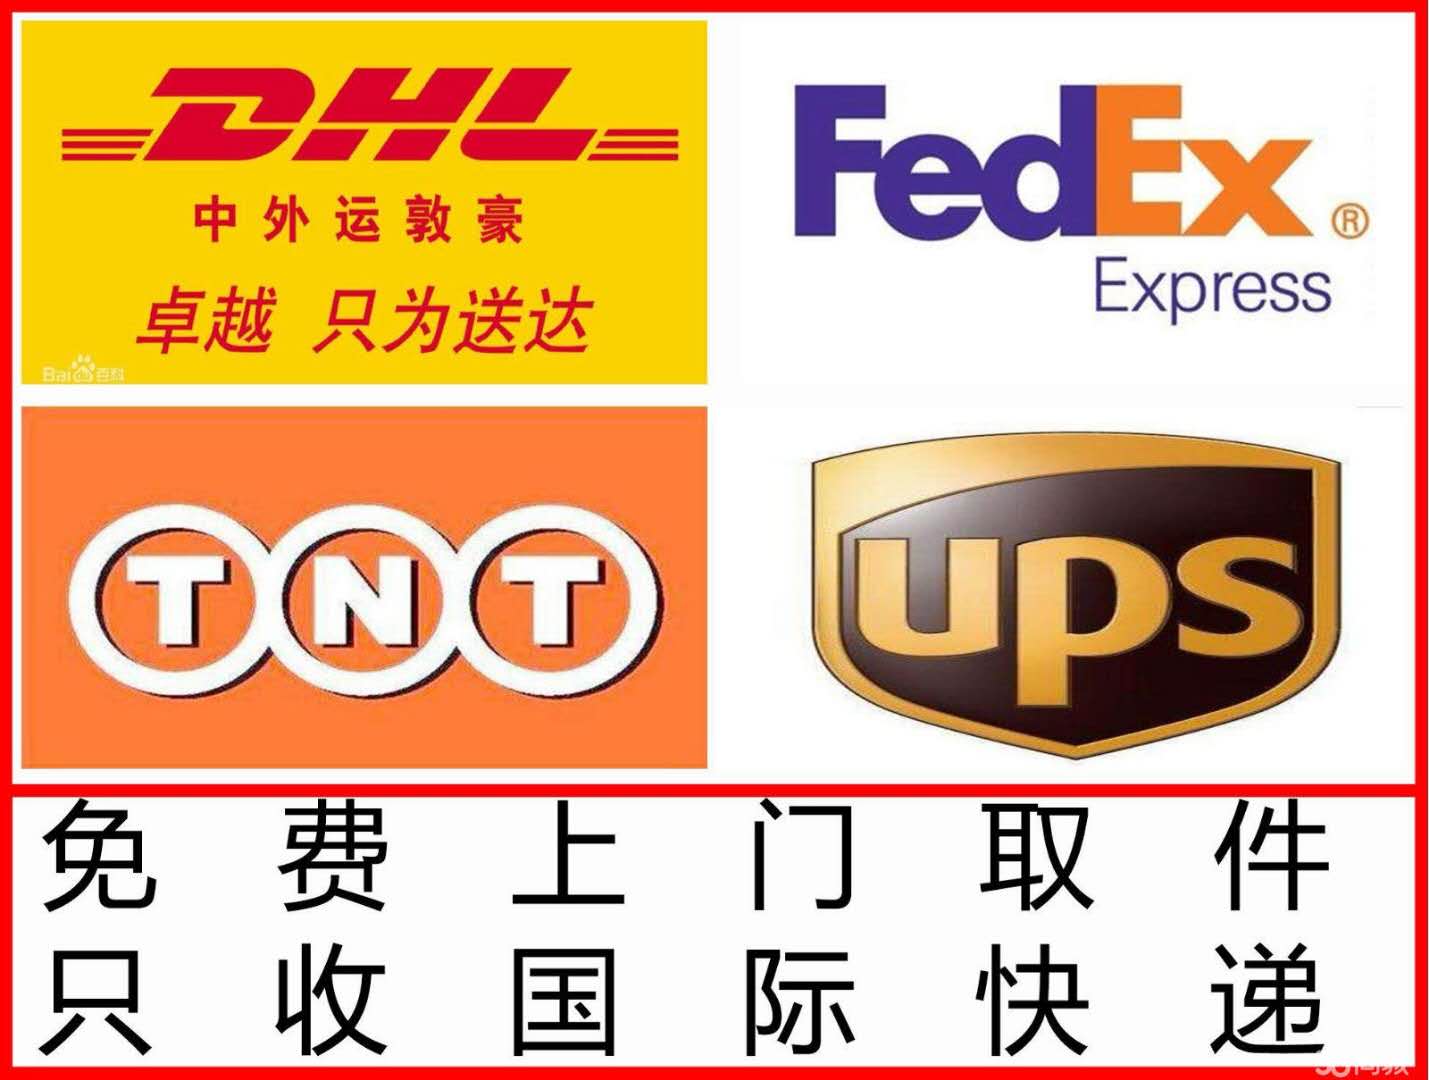 上海国际快递,全市上门取件,四大国际快递服务图片